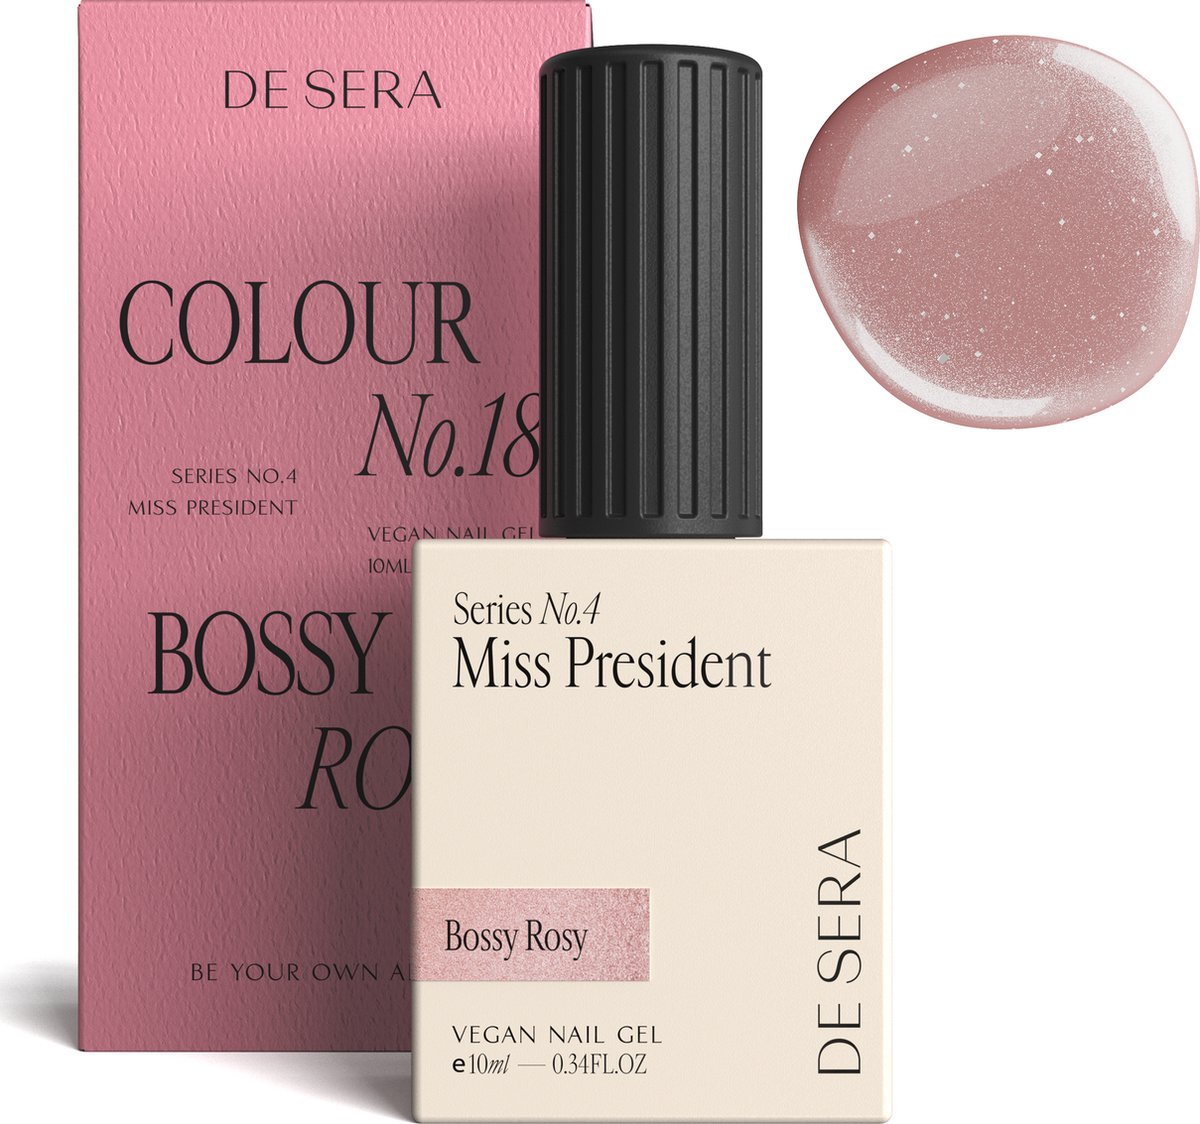 De Sera Gellak - Glitter Roze Gel Nagellak - 10ML - Colour No. 18 Bossy Rosy